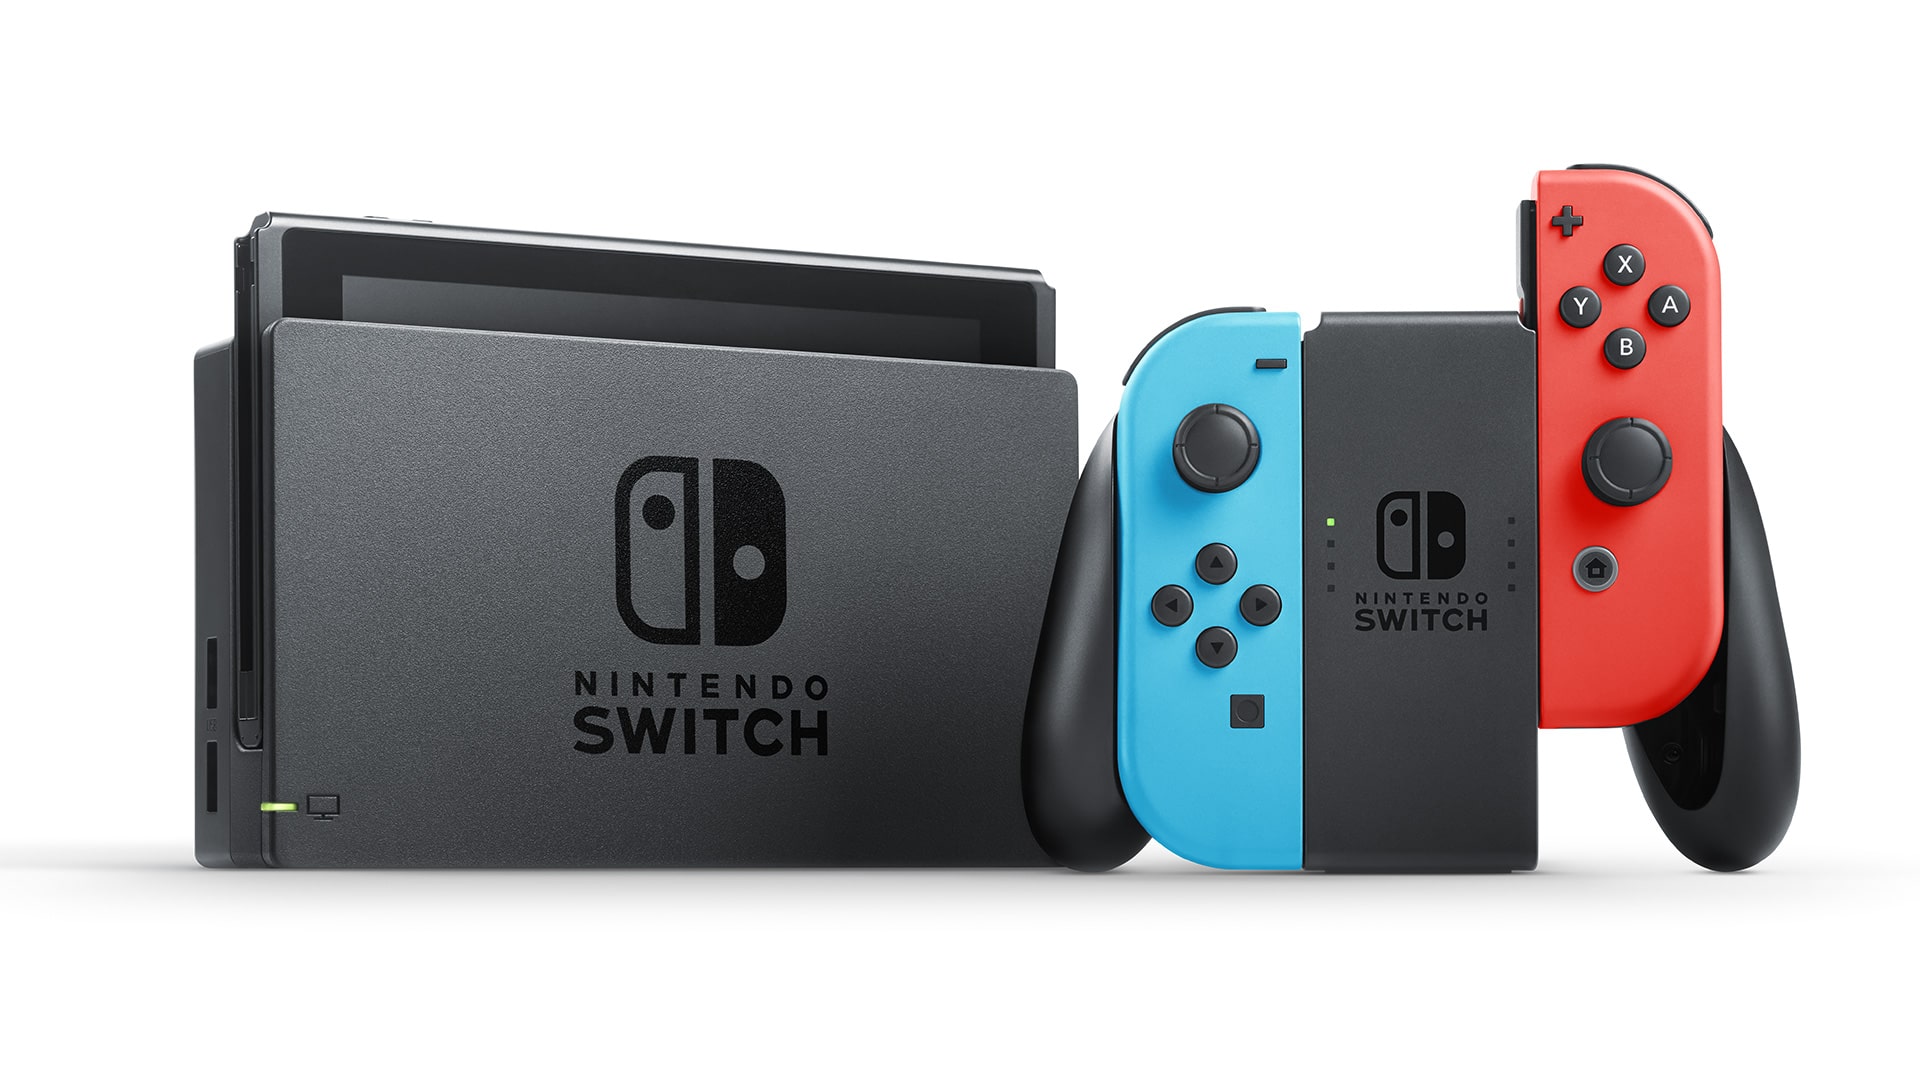 Nintendo Switch Pro min 1-oyunpat